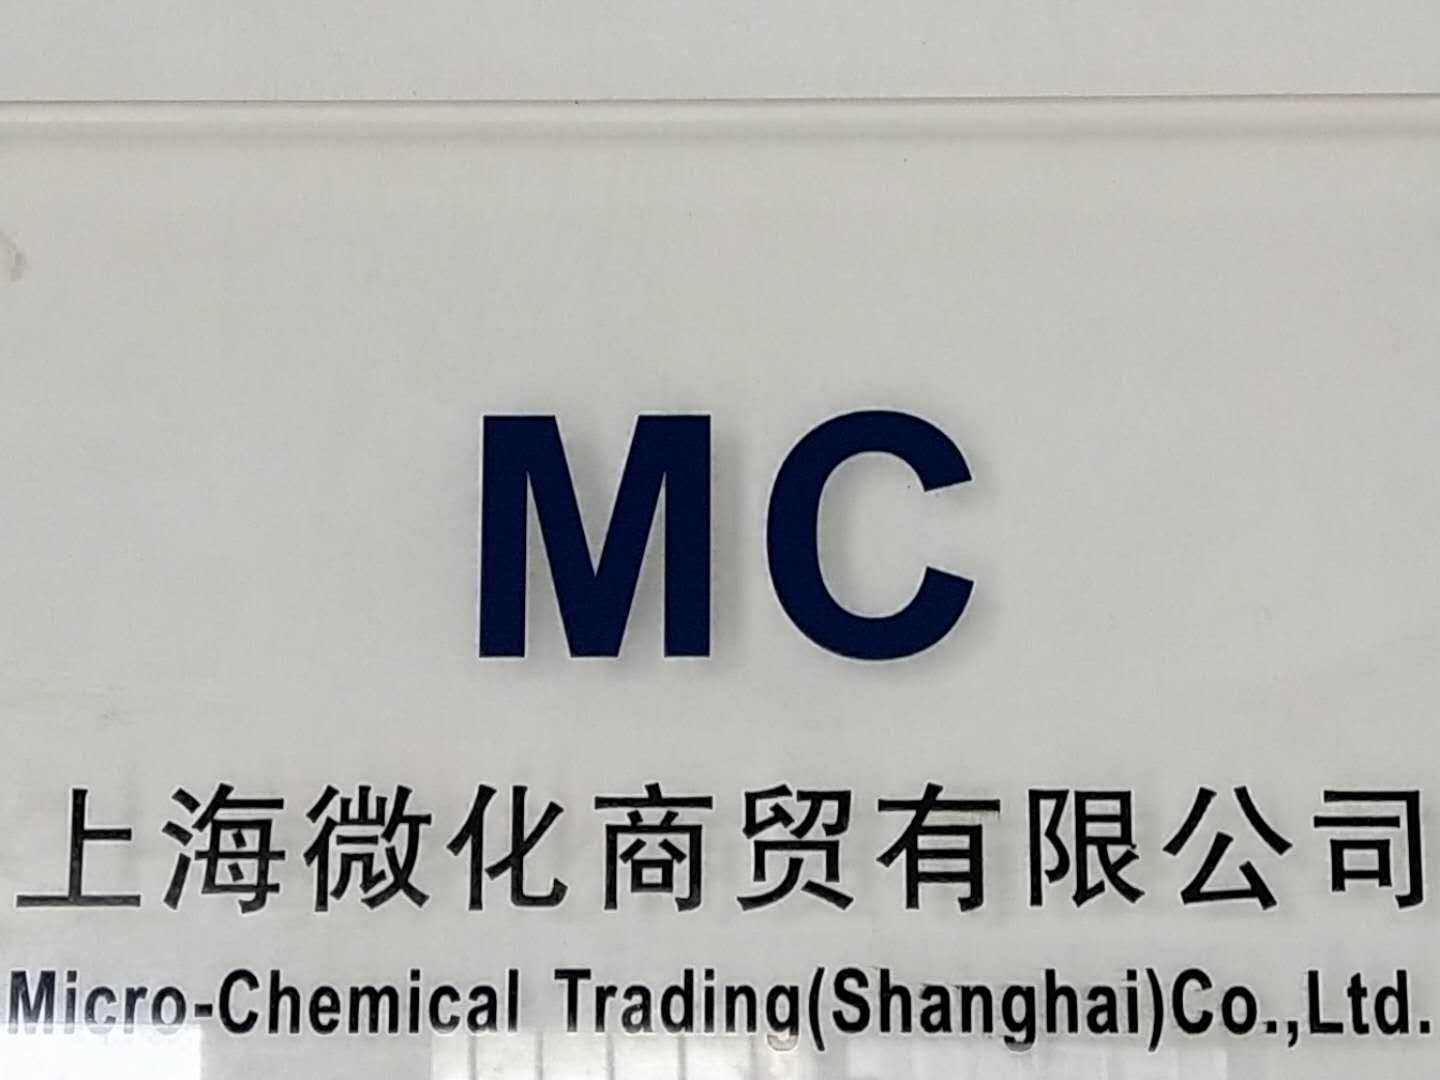 上海微化商贸有限公司